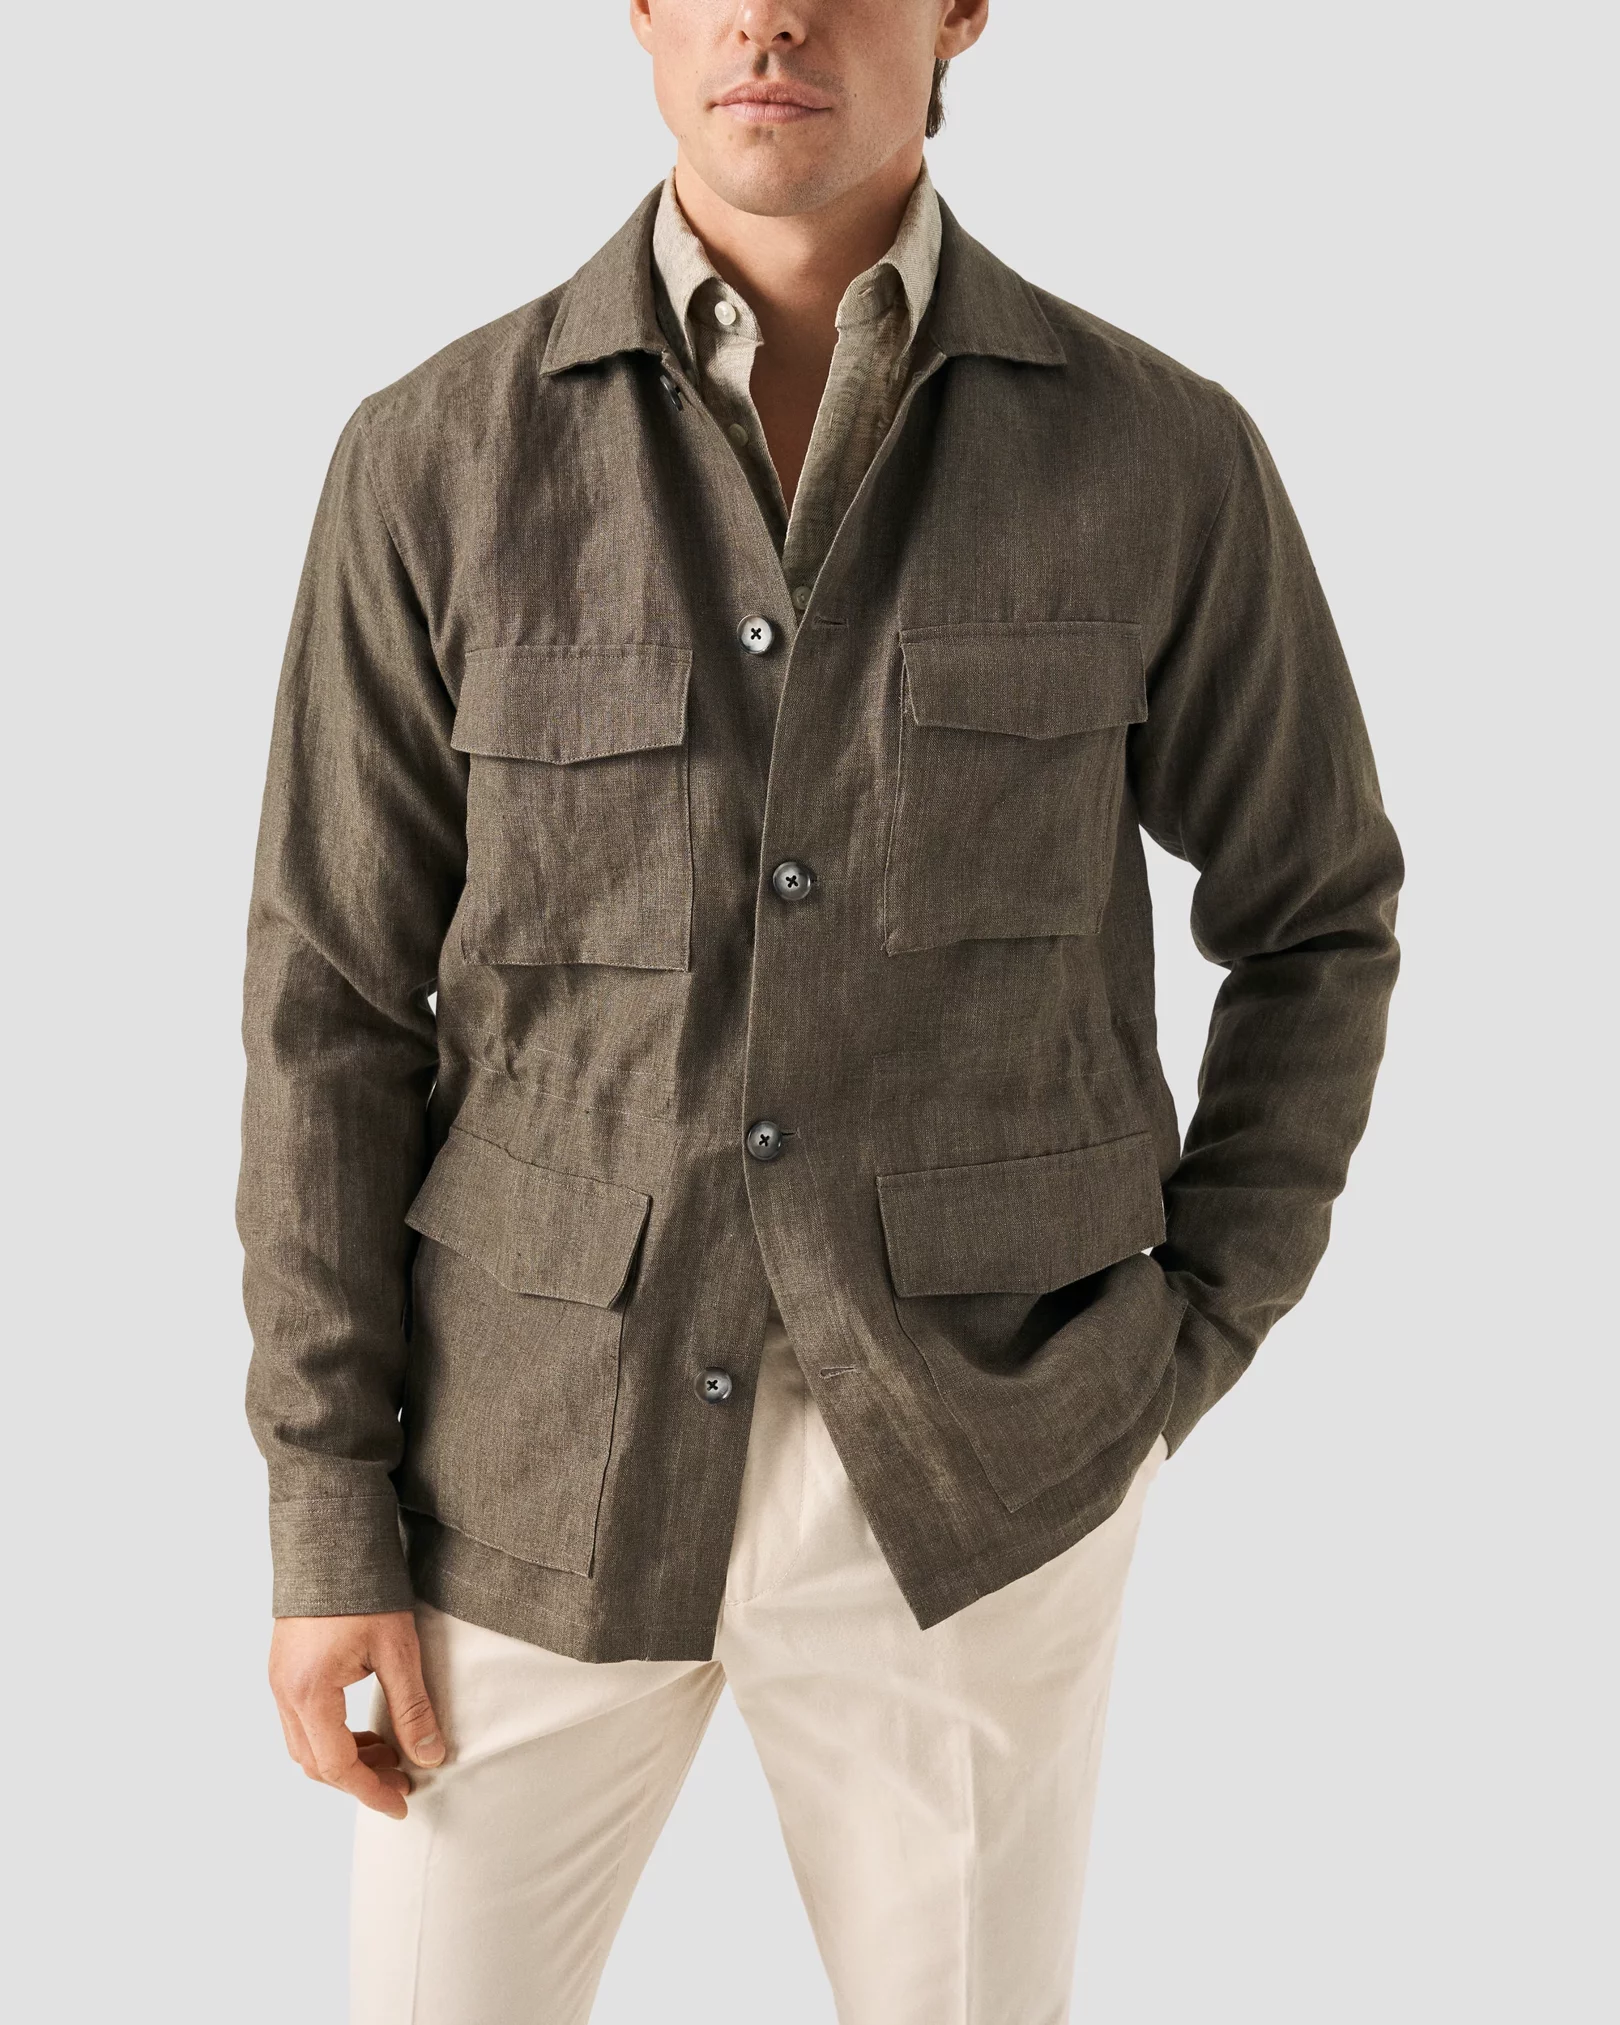 Eton - button down light brown linen shirt